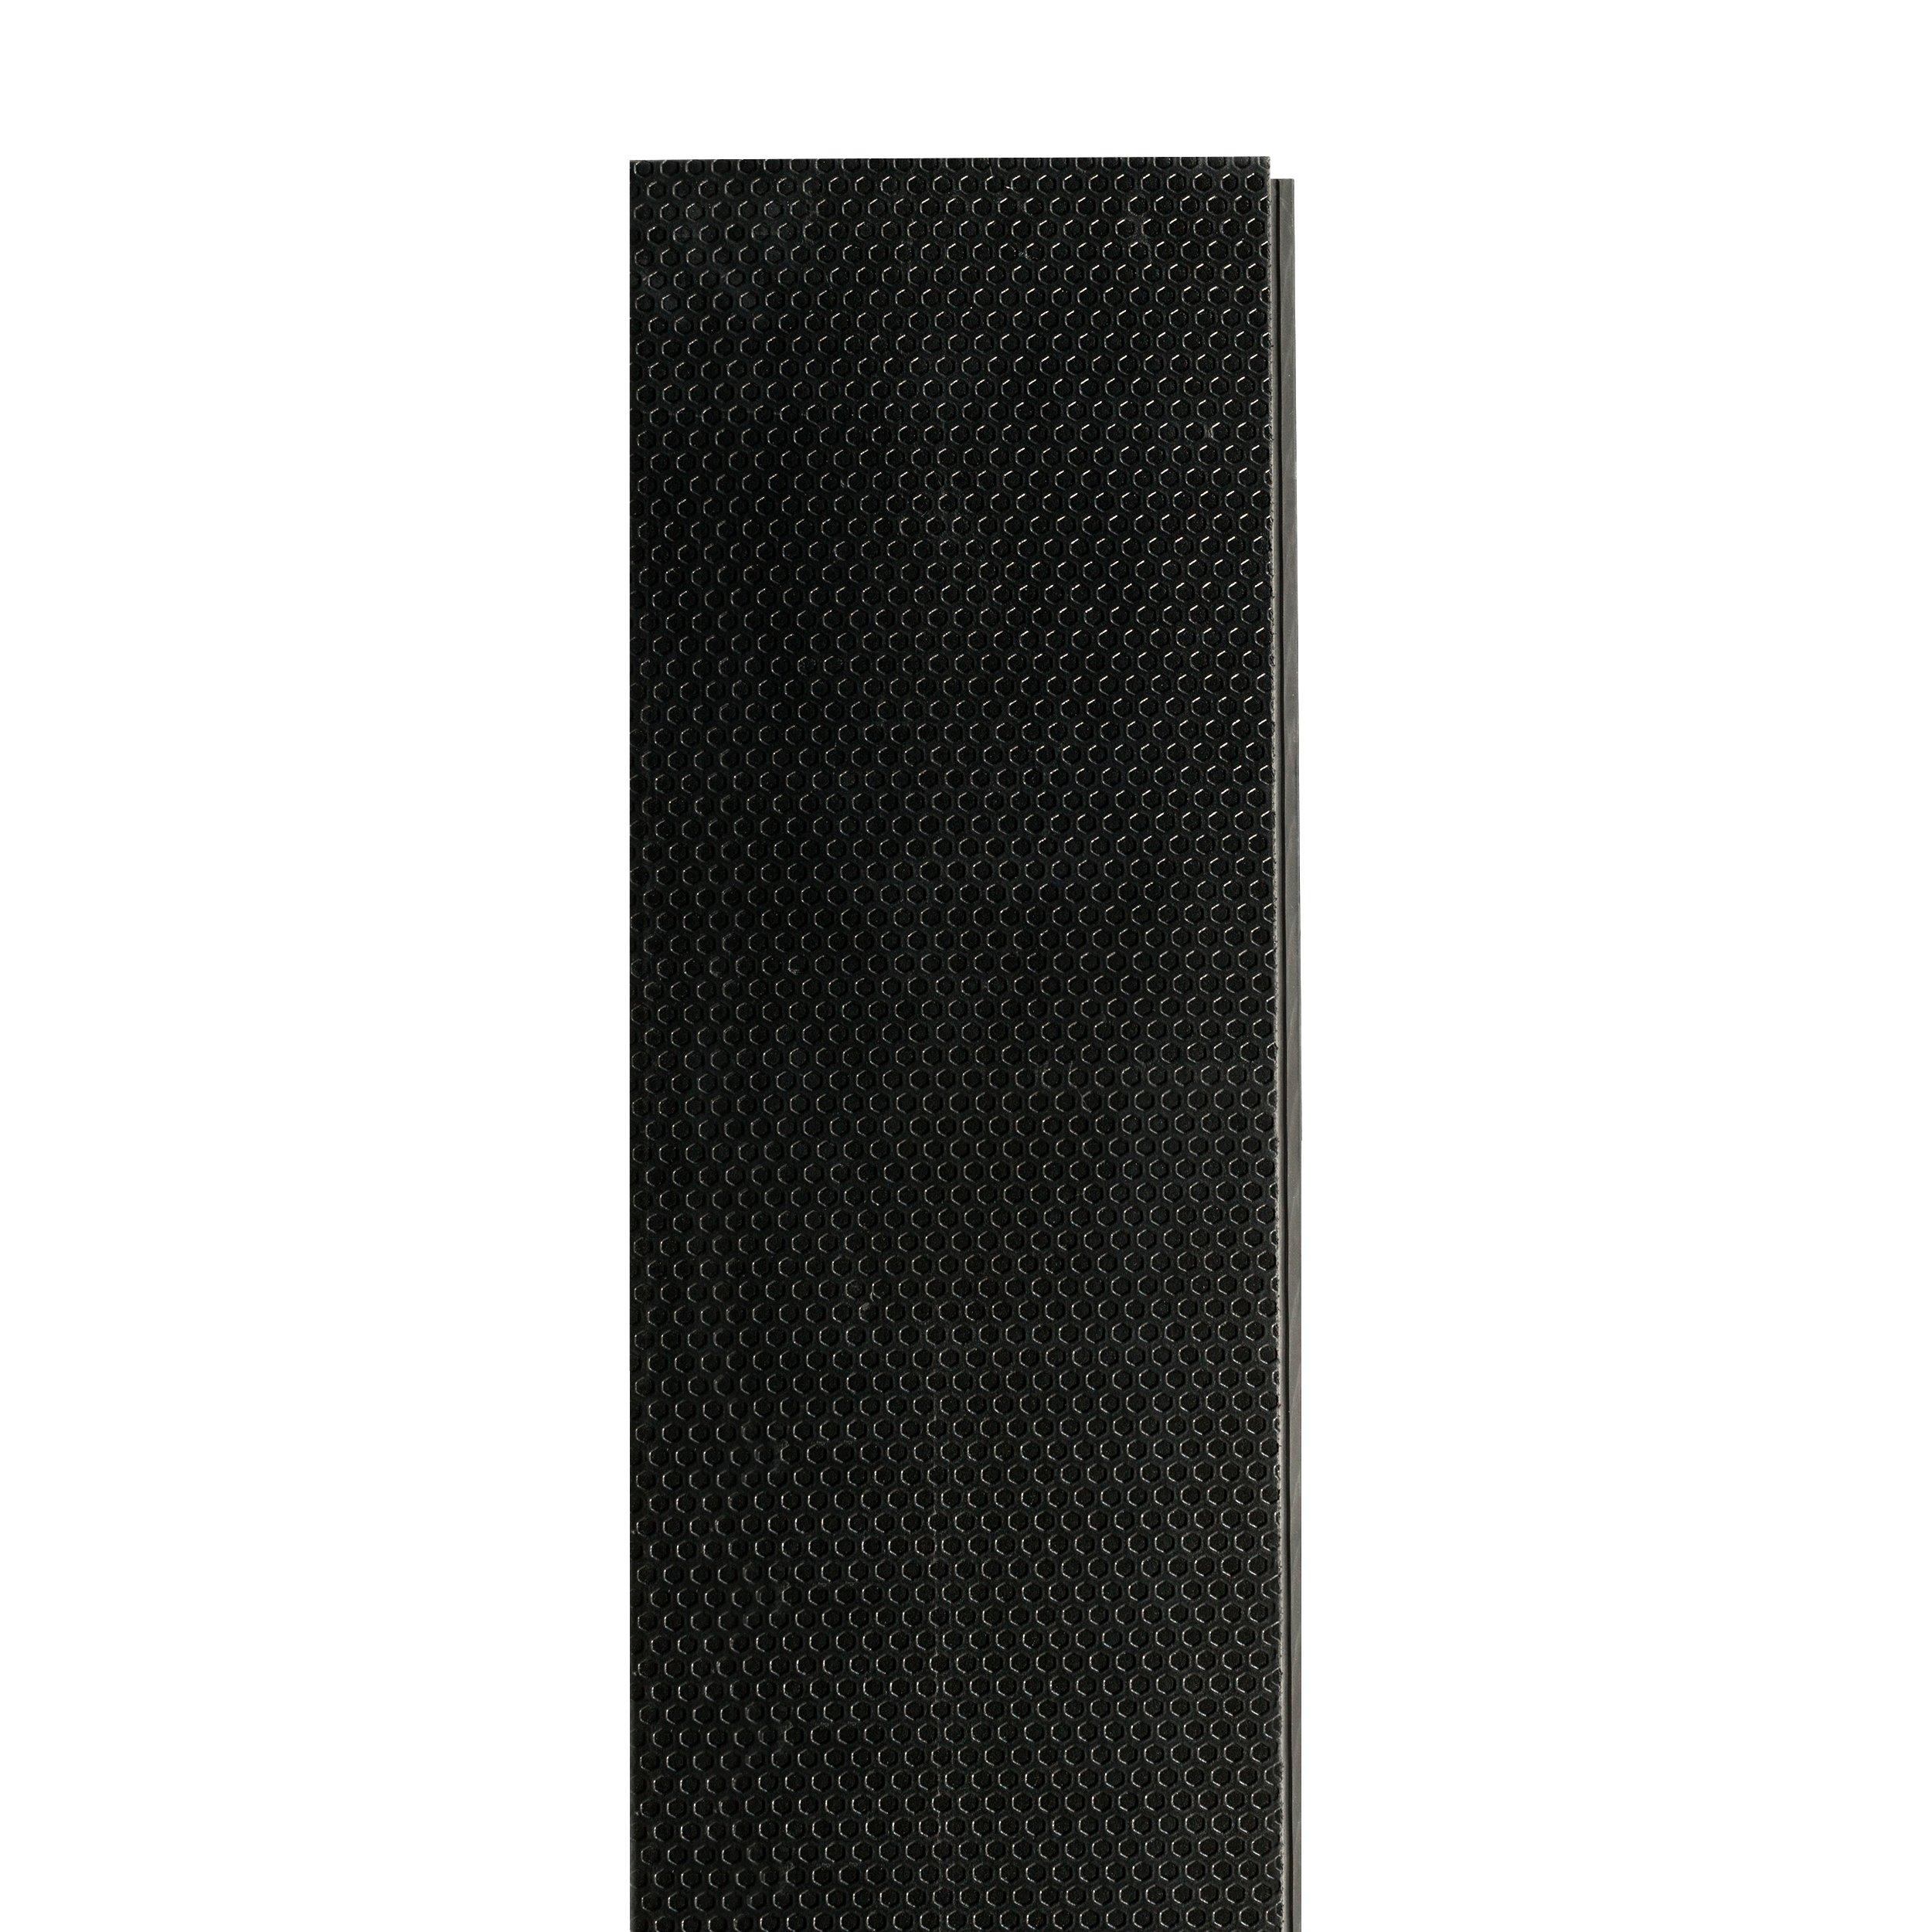 Grayson Peak Rigid Core Luxury Vinyl Plank - Foam Back